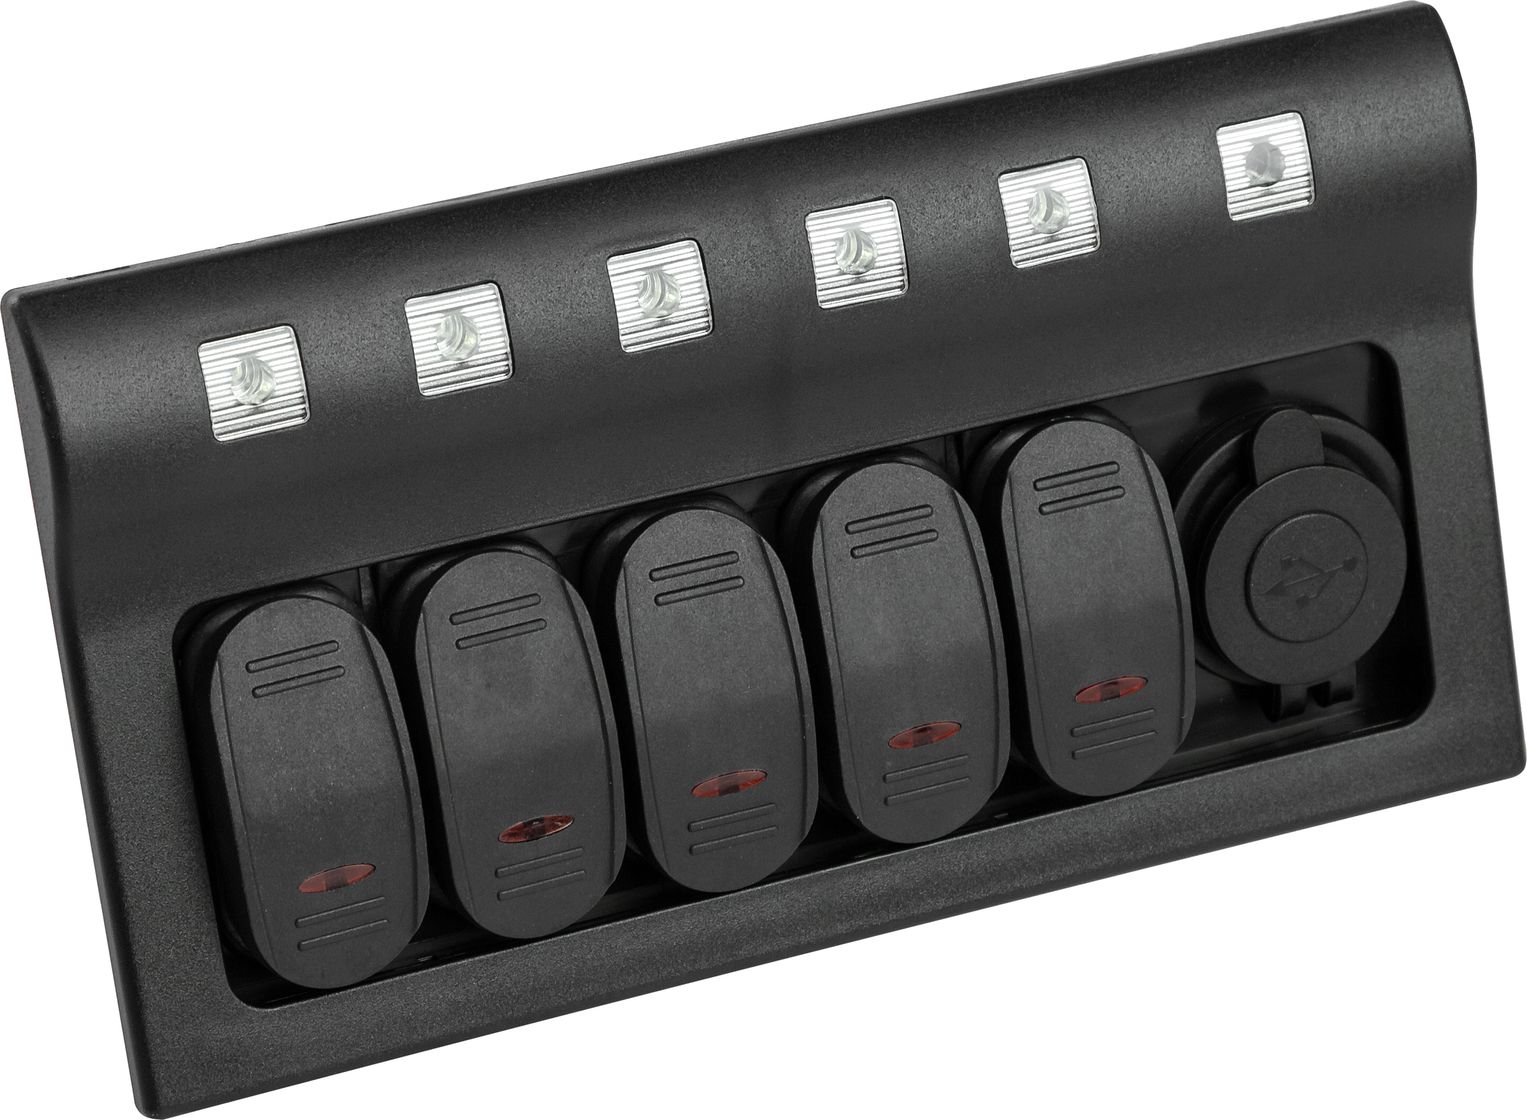 Панель бортового питания 5 переключателей, USB зарядка, индикация, автоматы 10325 панель бортового питания 5 переключателей автоматы прикуриватель 10536